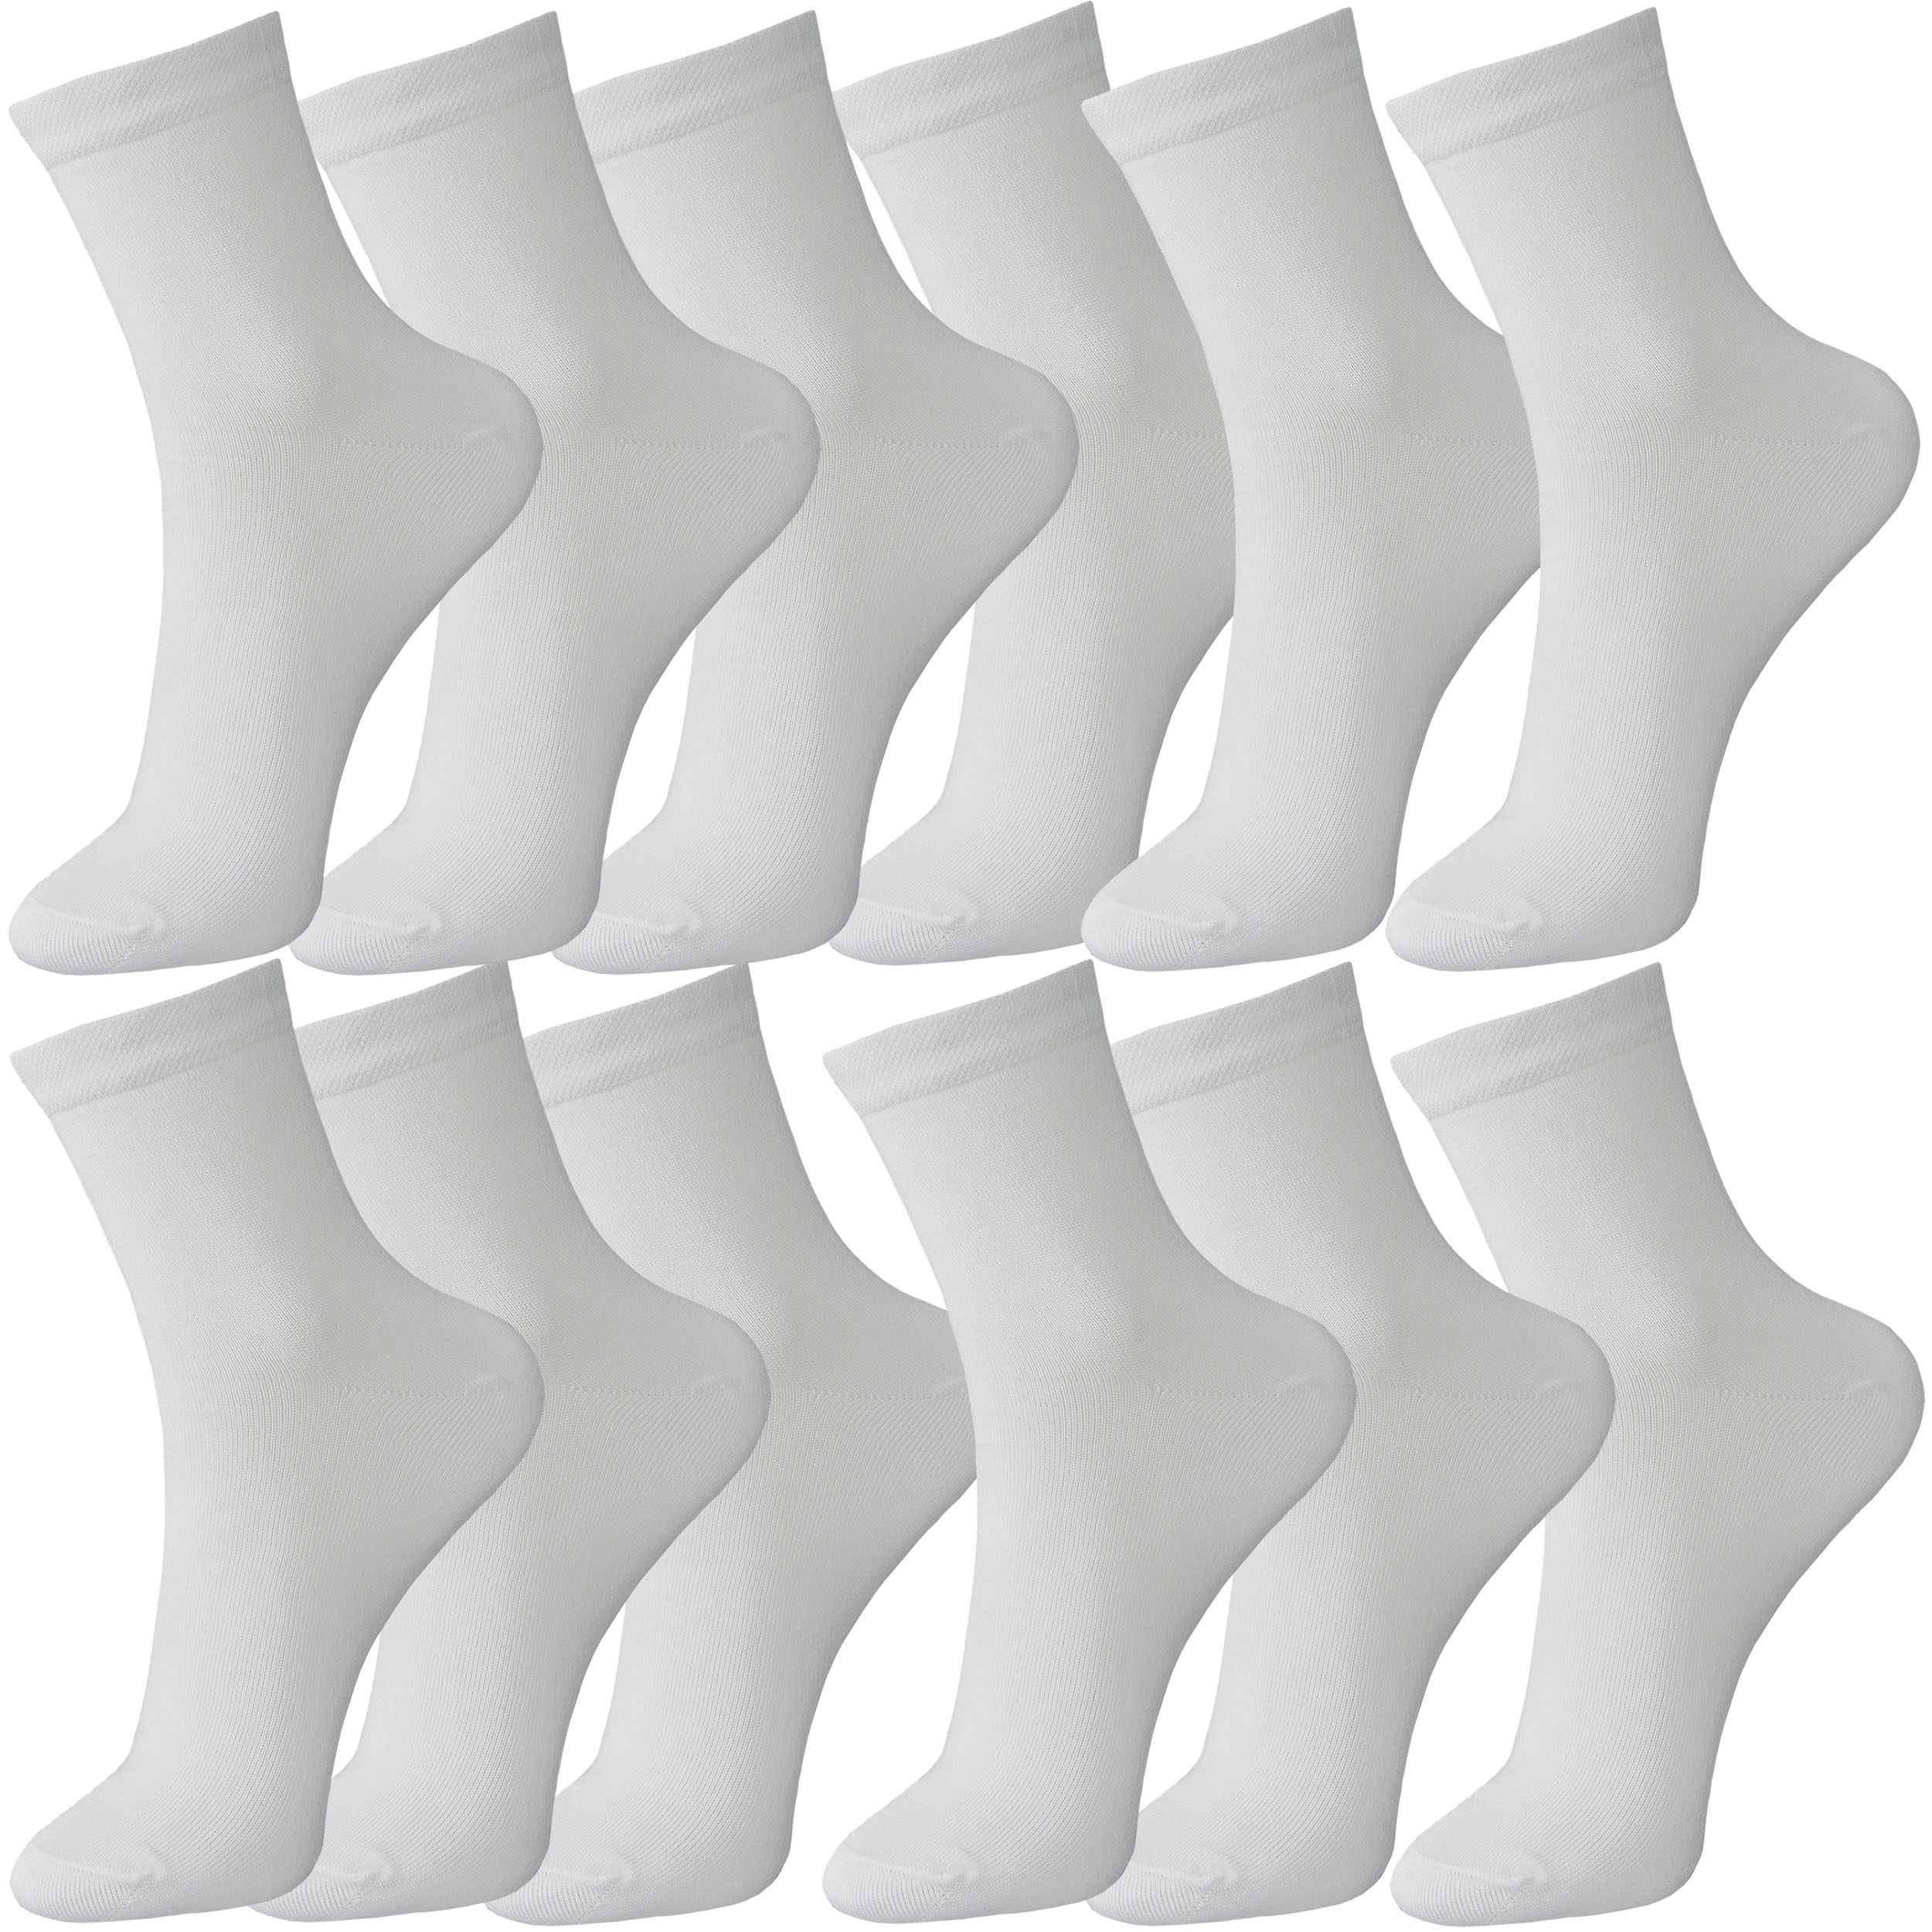 جوراب ساق کوتاه مردانه ادیب مدل کلاسیک کد 02010 رنگ سفید بسته 12 عددی 